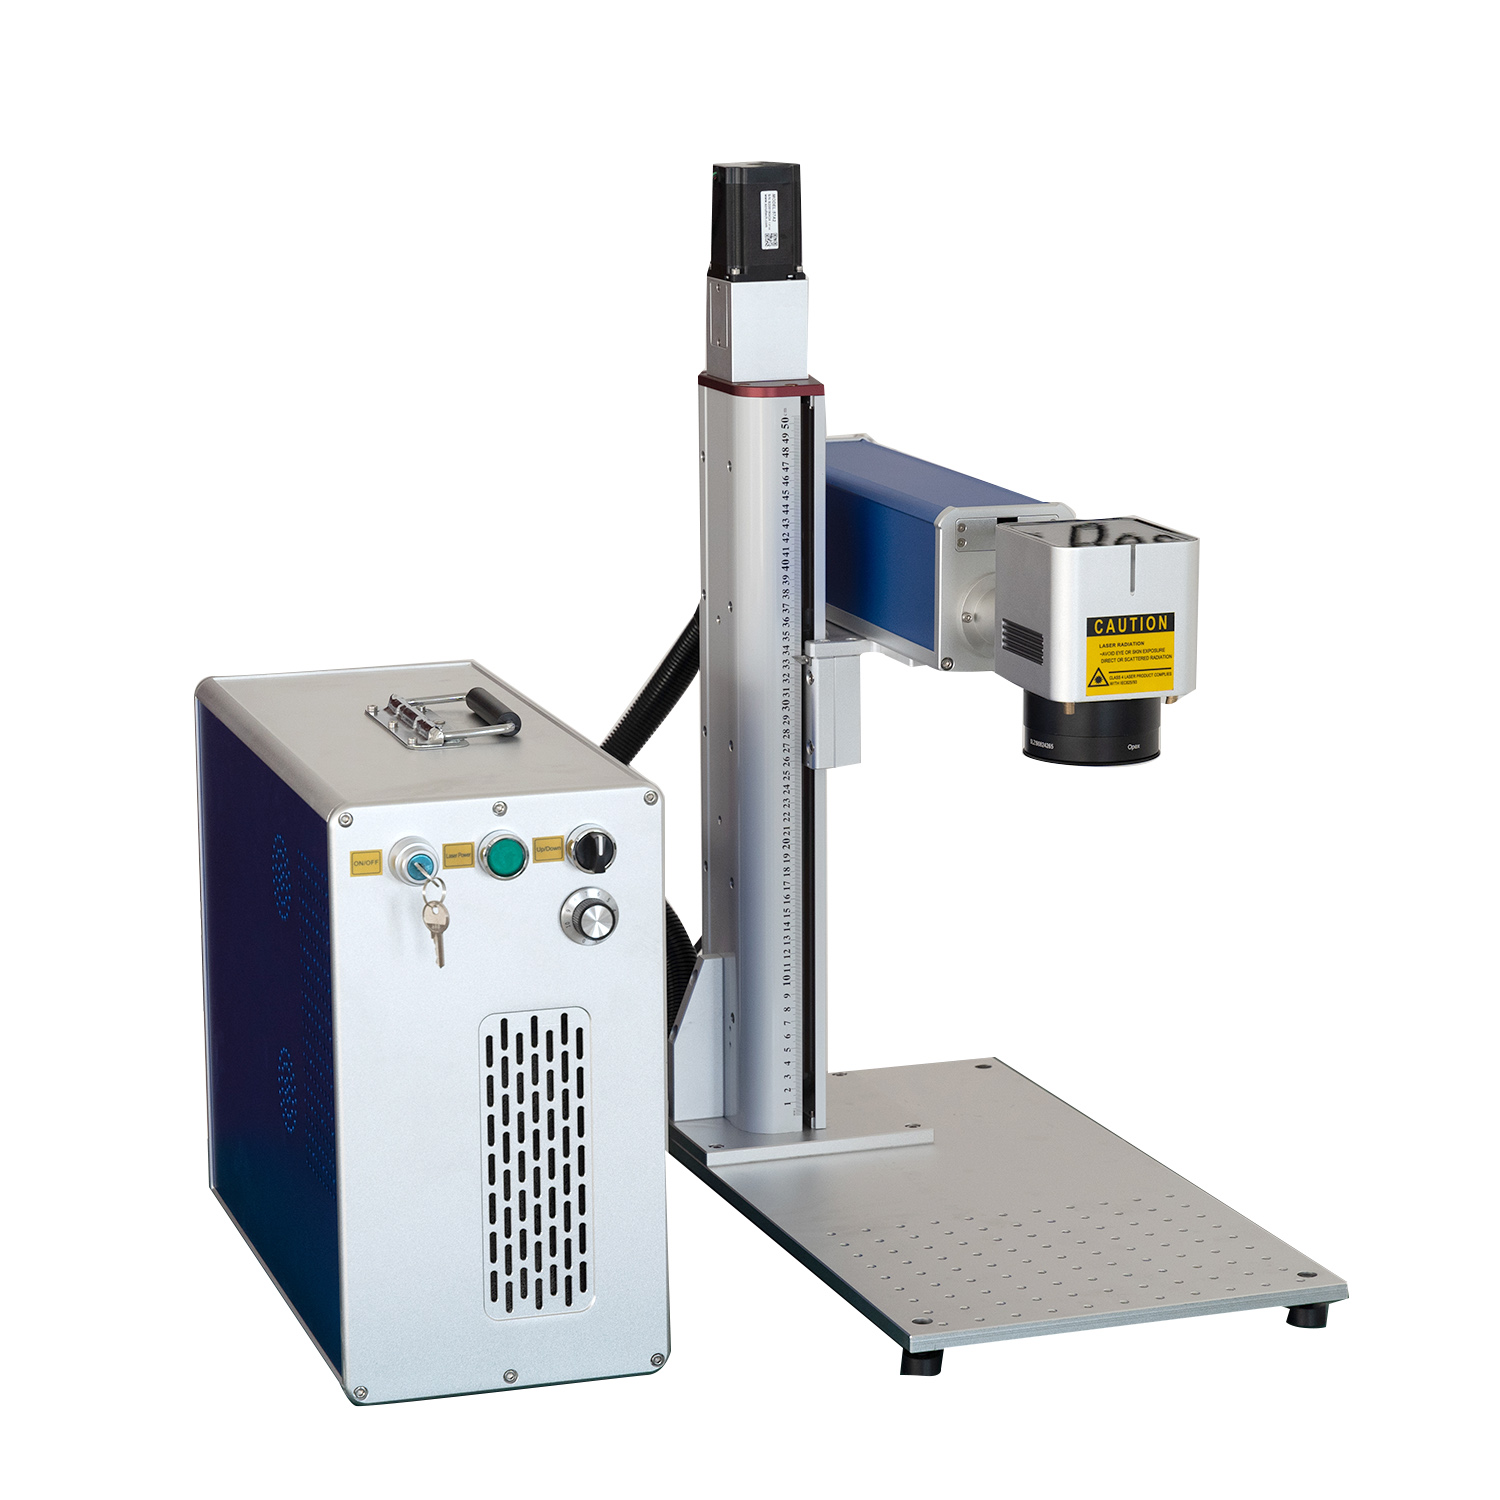 Fiber Lasermarkeermachine te koop Fabriek direct Prijs 60w 80w 100w 120w Mopa Fiber Lasermarkeermachine